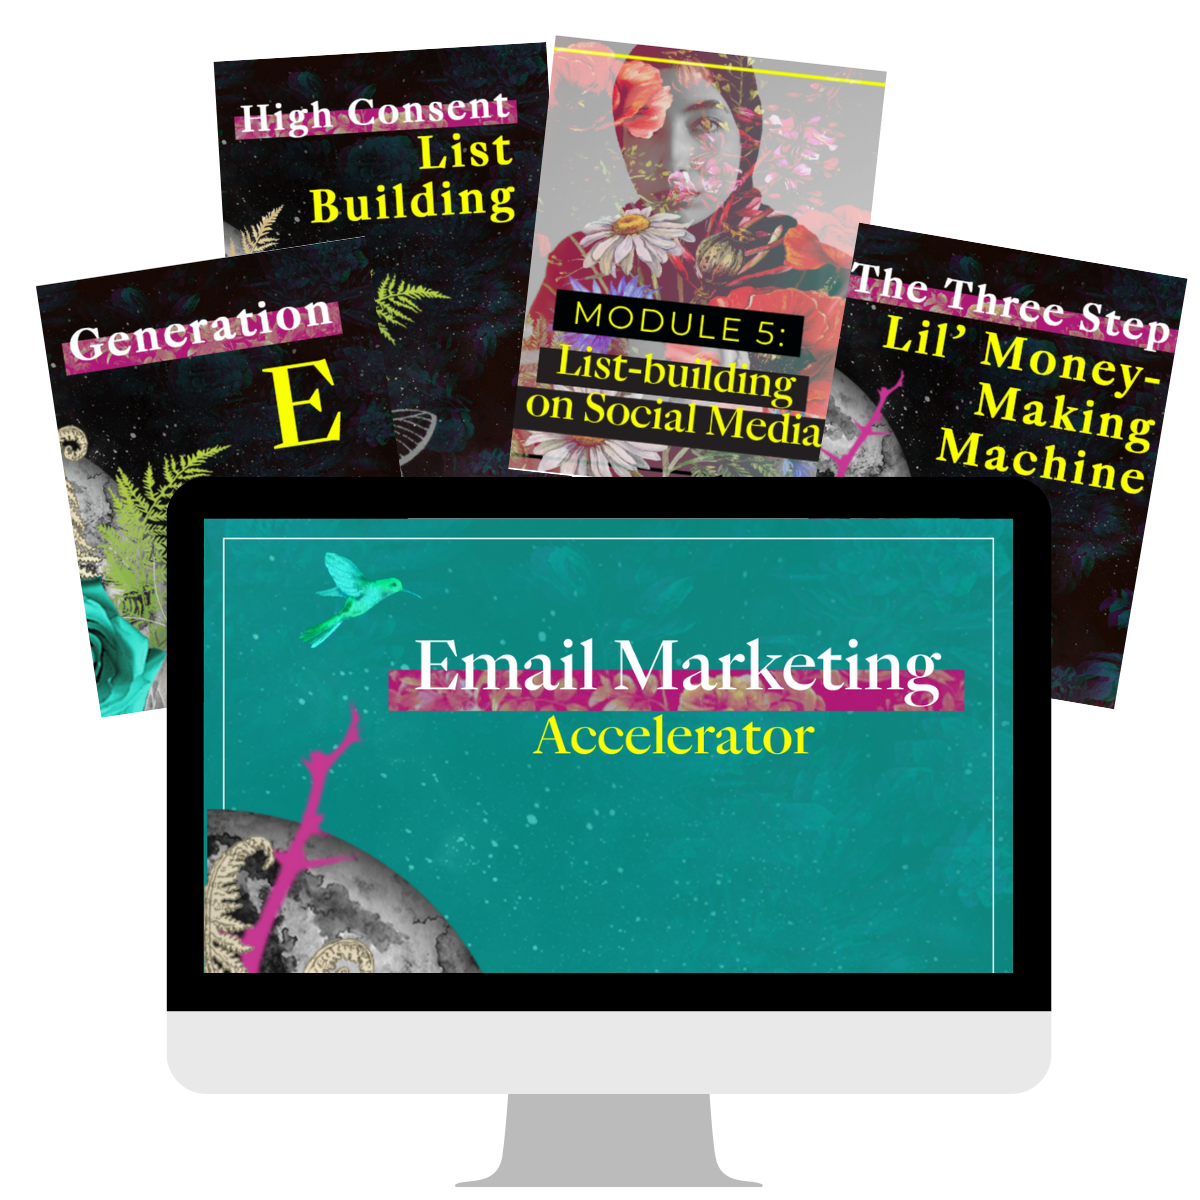 Email Marketing Accelerator desktop image